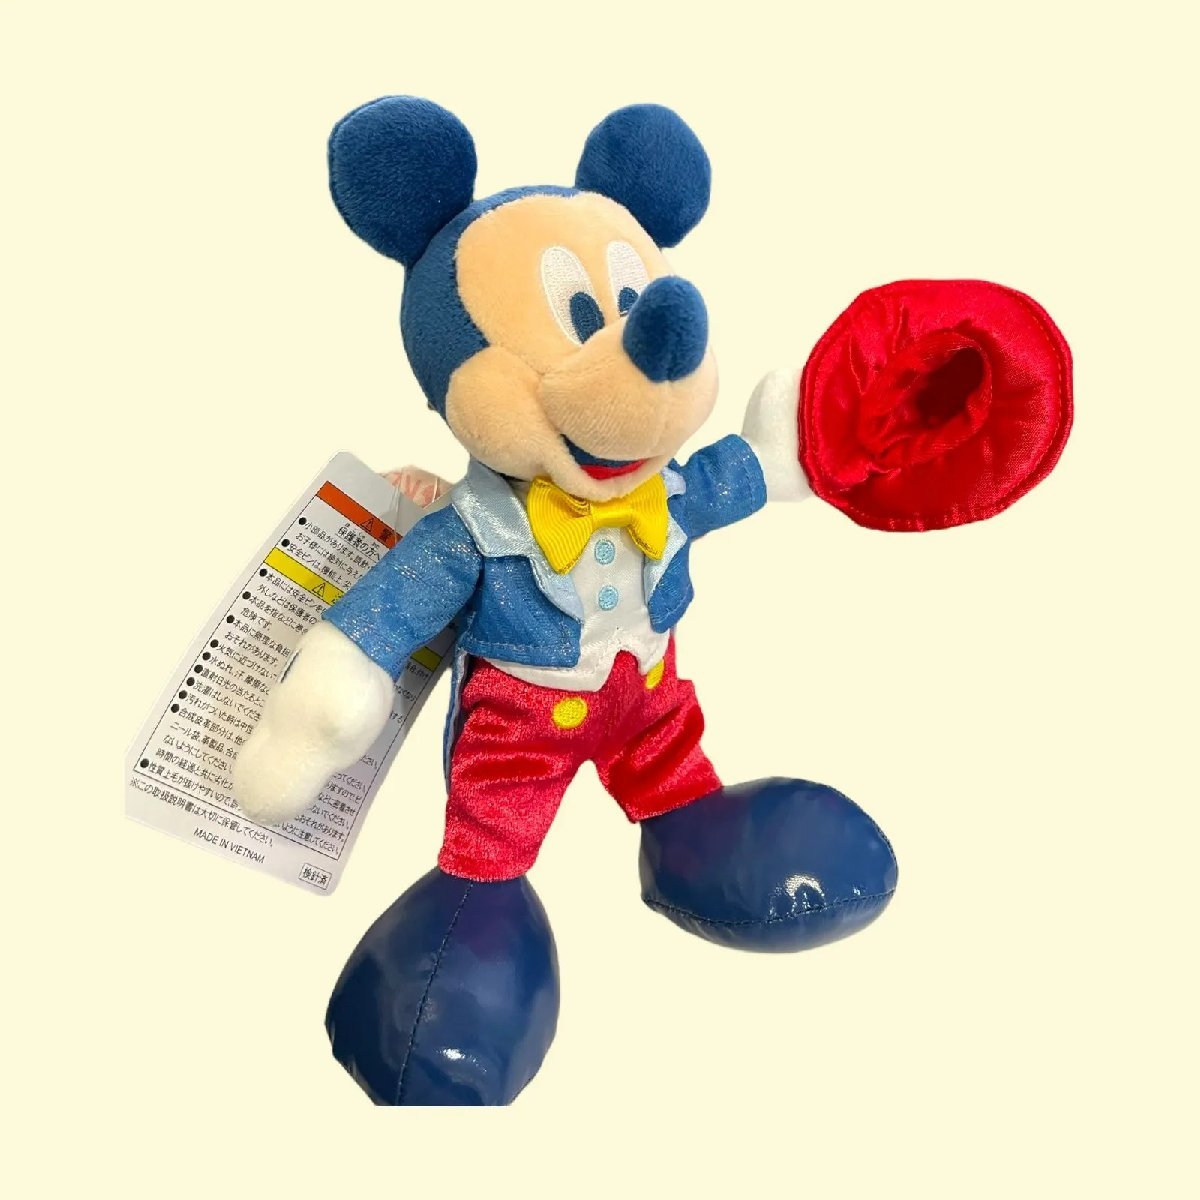 連urzz Tdr ぬいぐるみバッジ ミッキー 誕生日 22年 東京 ディズニー リゾート ぬいば ぬいバ ミッキーマウス 売買されたオークション情報 Yahooの商品情報をアーカイブ公開 オークファン Aucfan Com